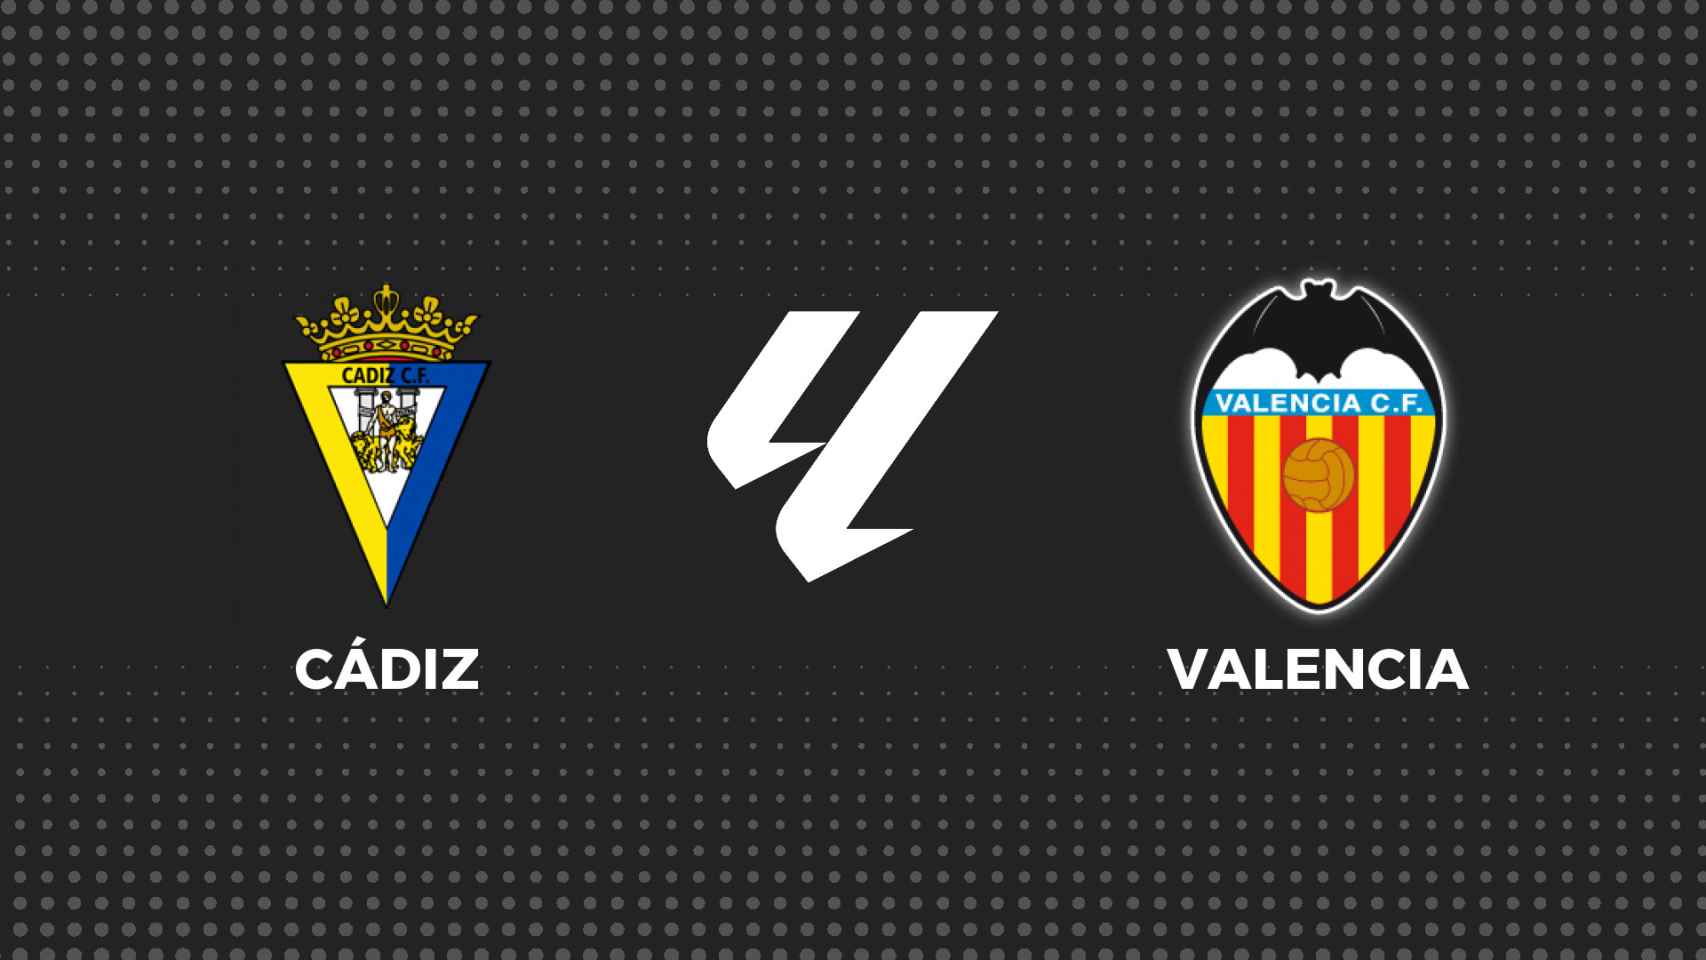 Cádiz - Valencia, fútbol en directo